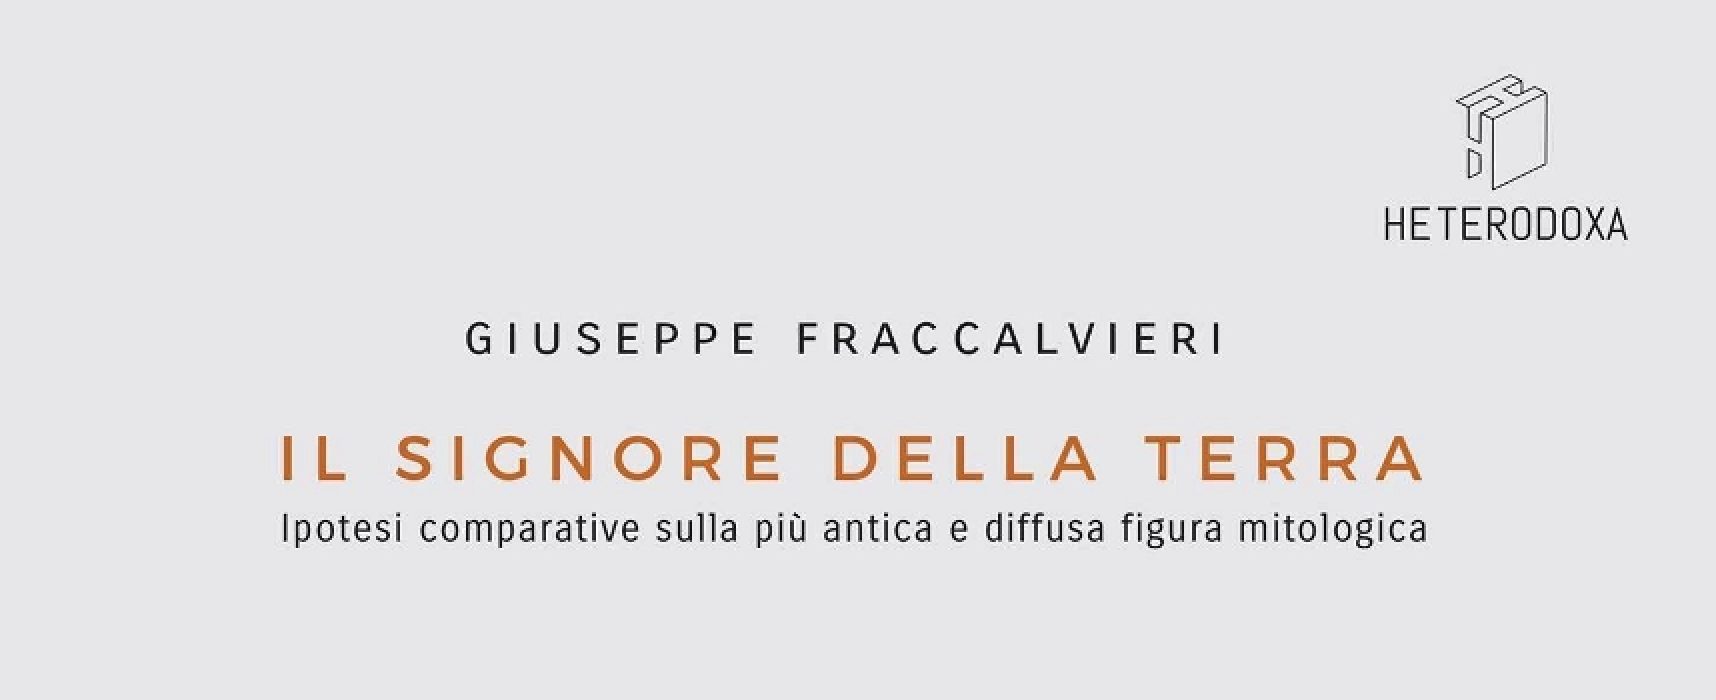 Tupputincontri presenta il saggio multidisciplinare di Giuseppe Fraccalvieri